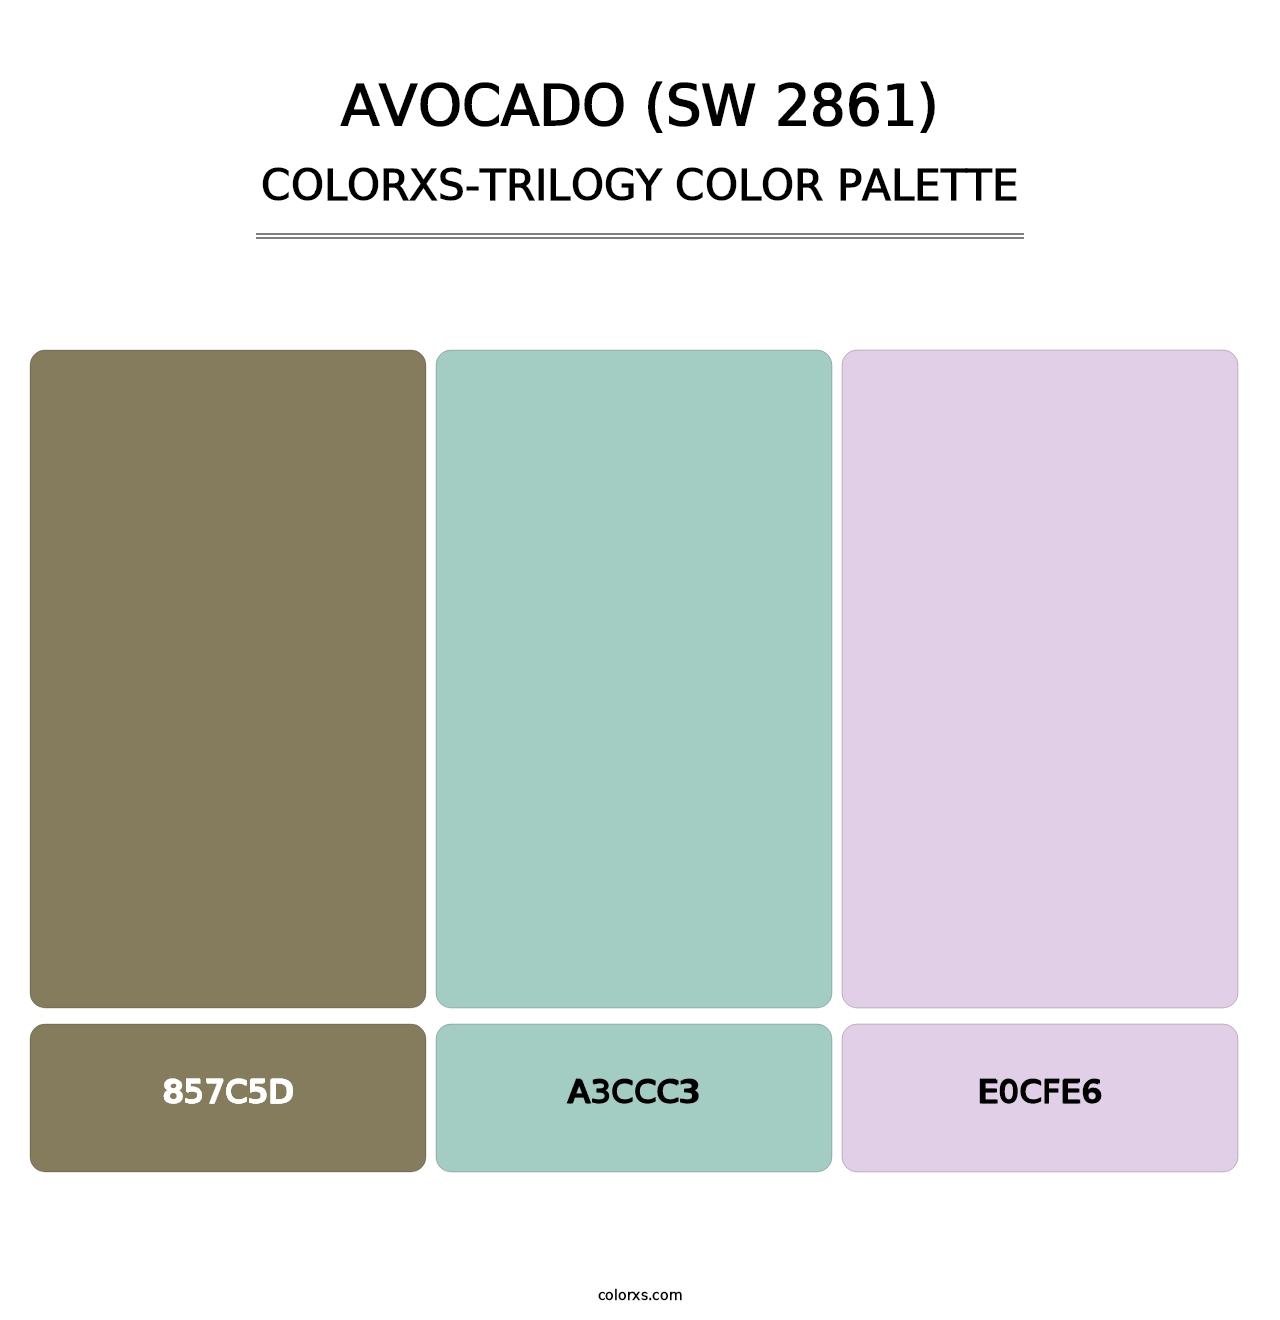 Avocado (SW 2861) - Colorxs Trilogy Palette